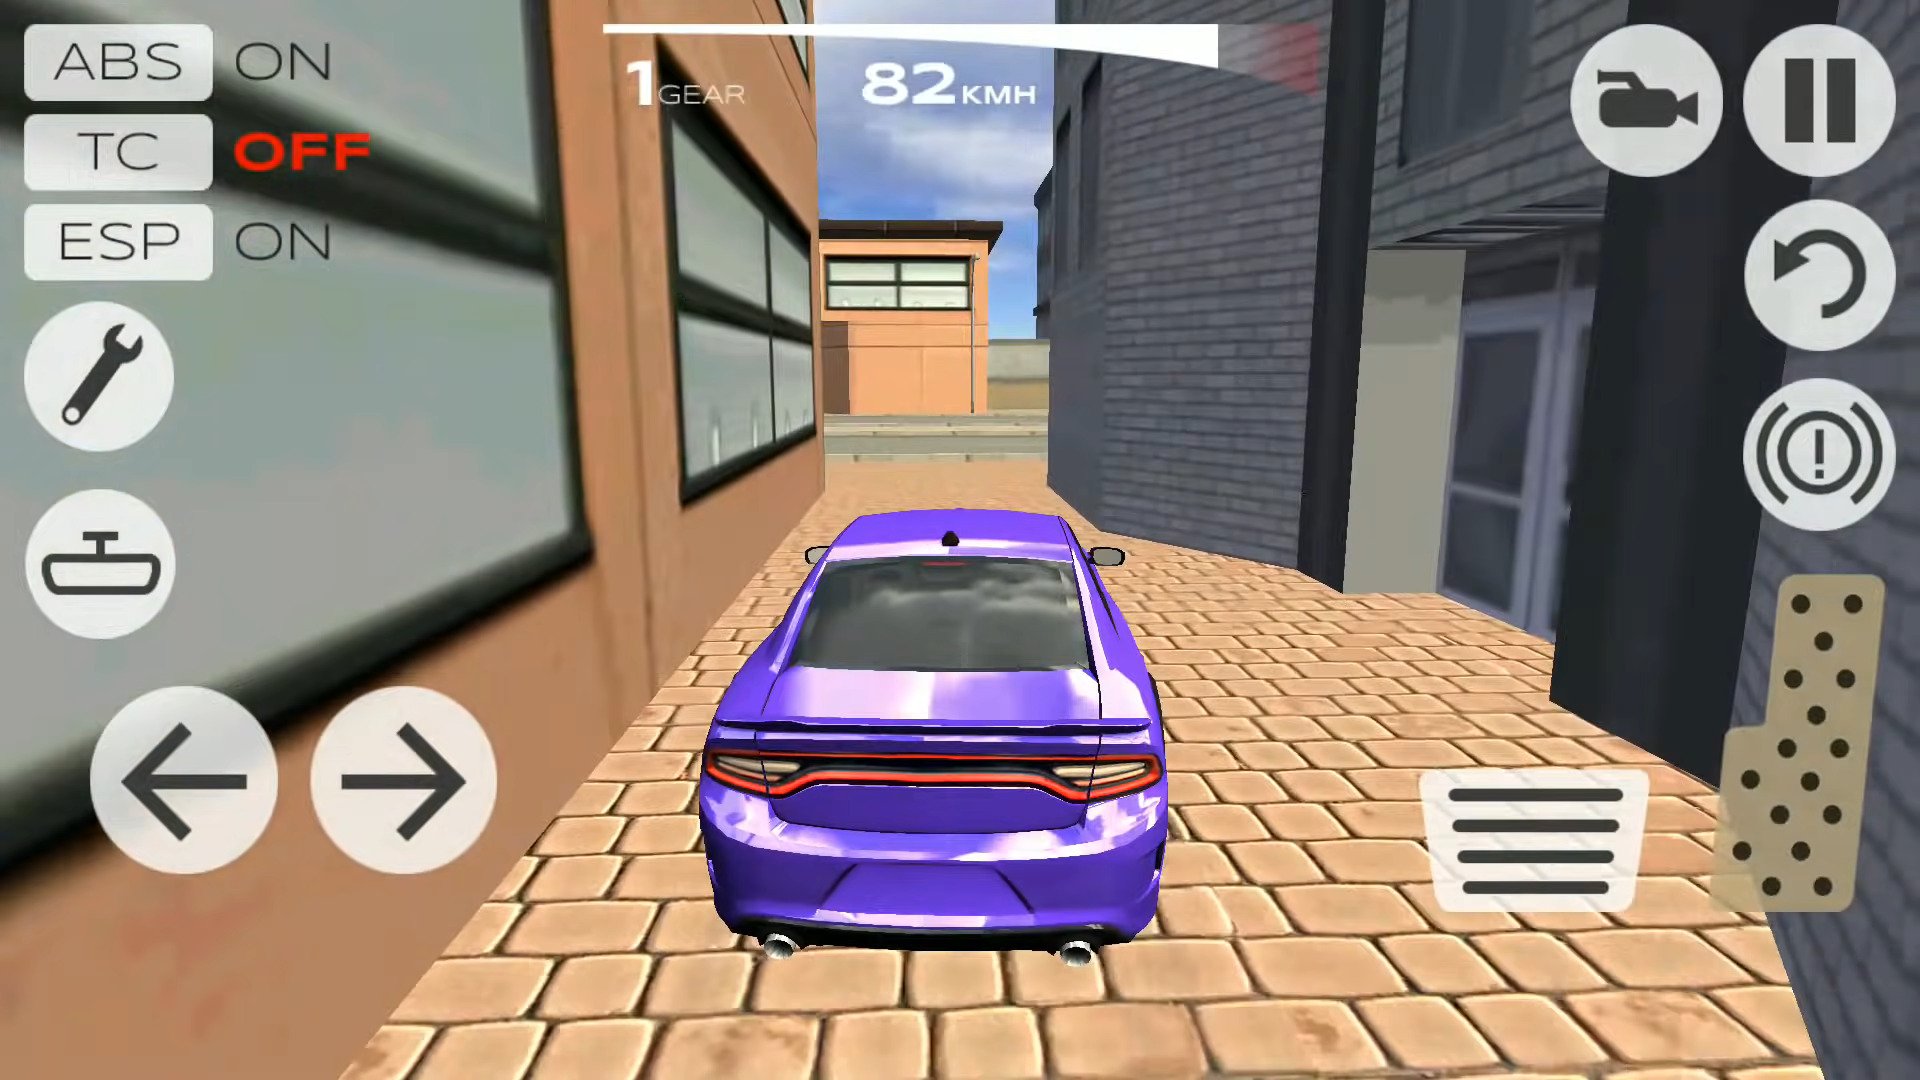 🔥 Download Extreme Car Driving Racing 3D 3.12 APK . Реалистичные гонки с  погонями и открытым миром 